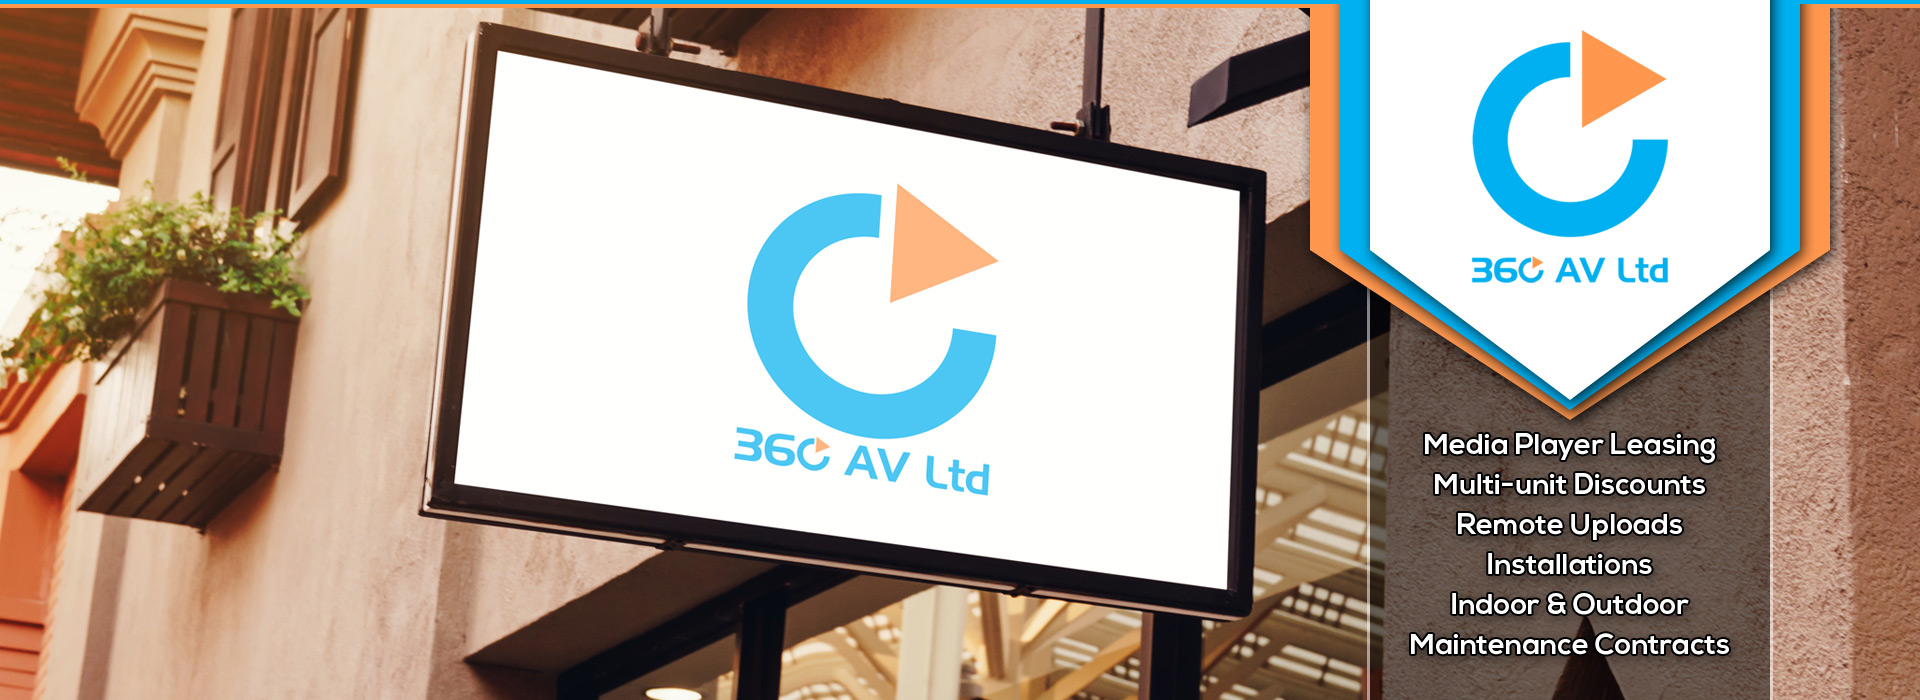 360 AV Ltd | Digital Signage